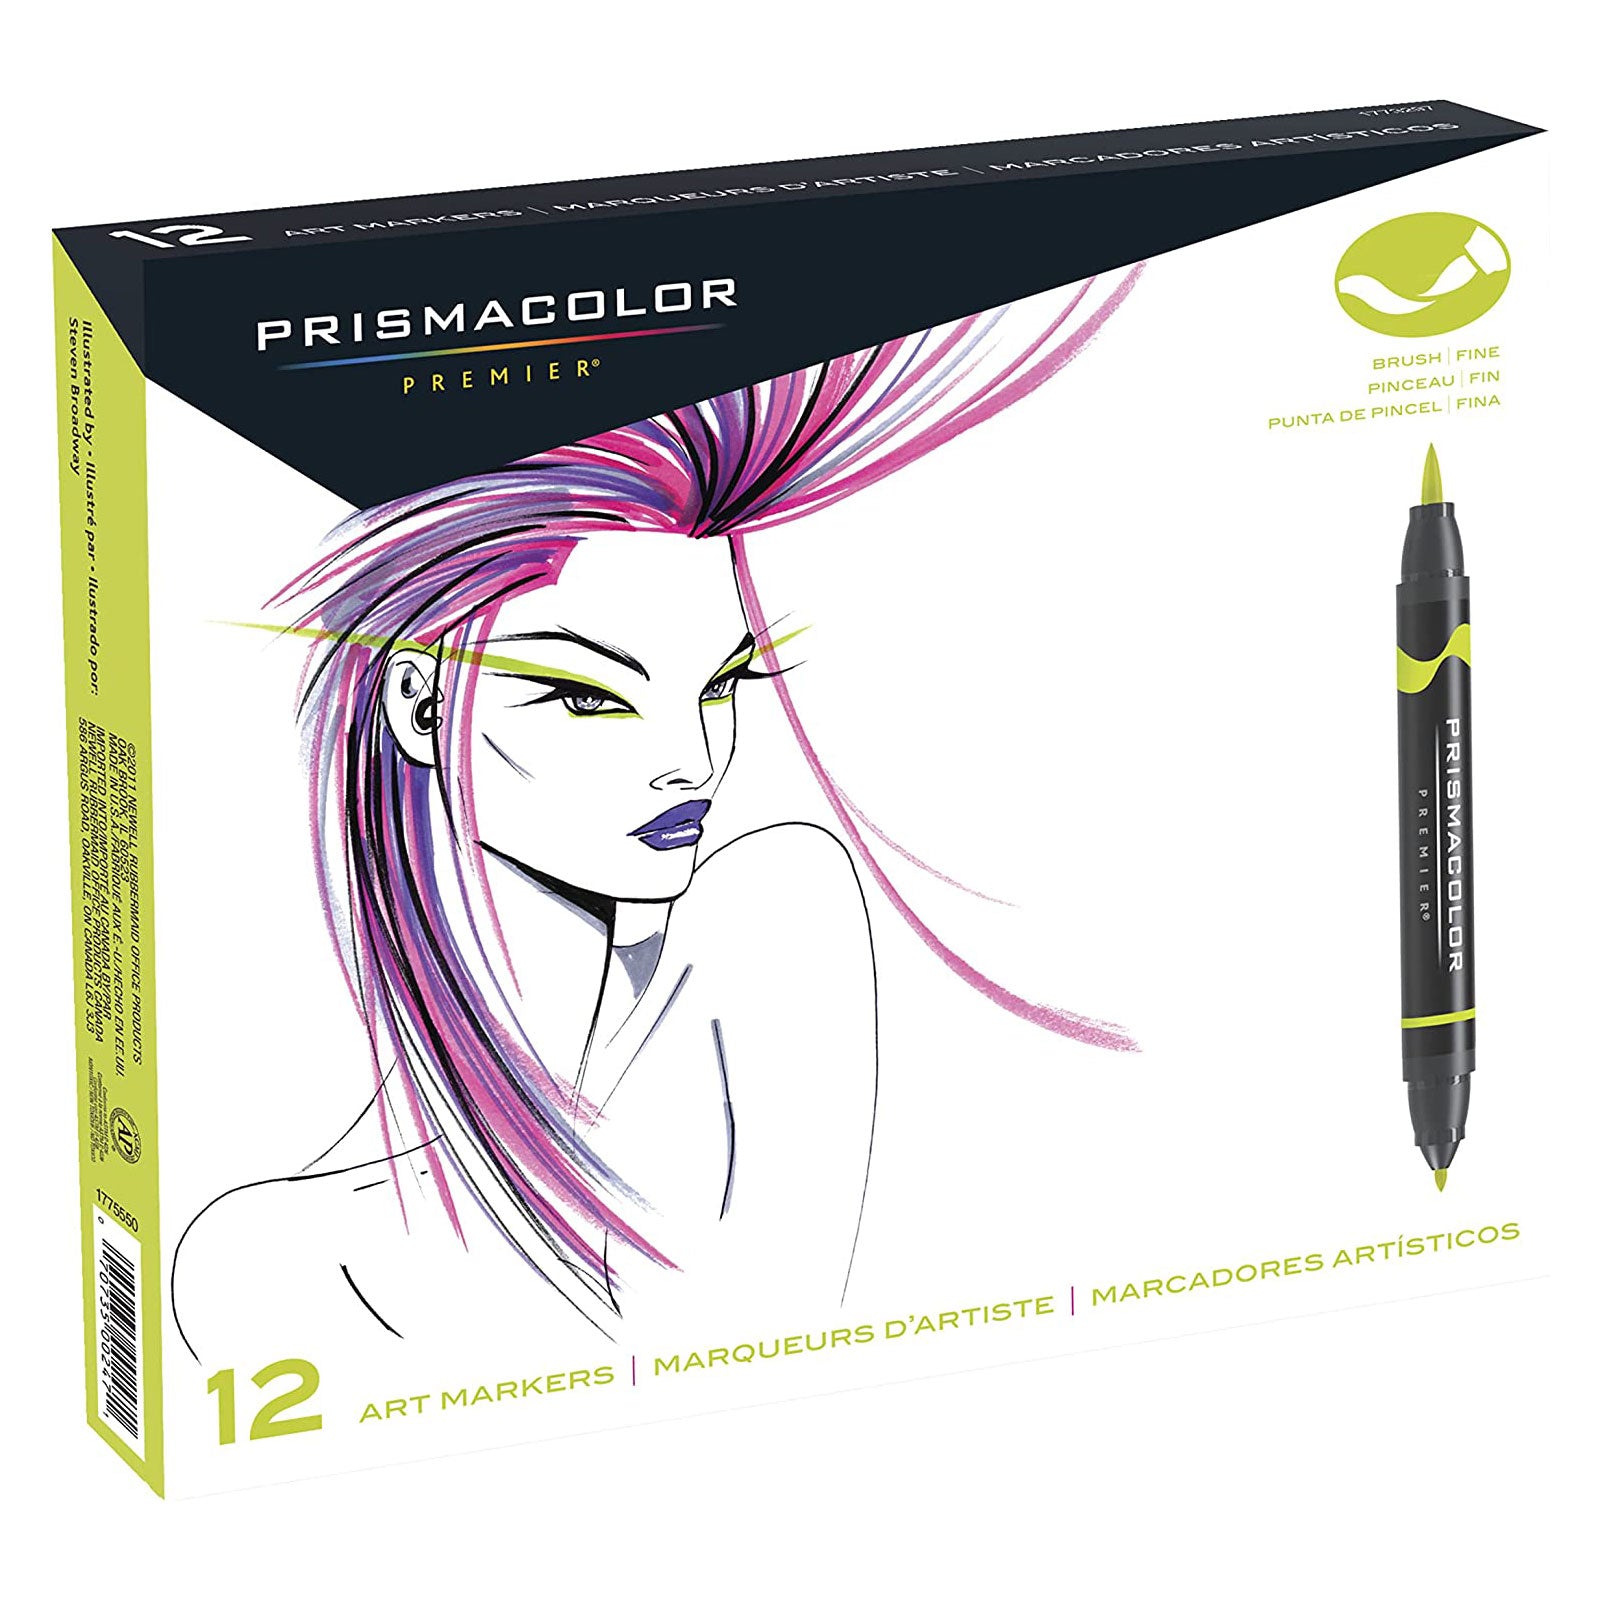 Prismacolor Premier Art Markers- 12pc set